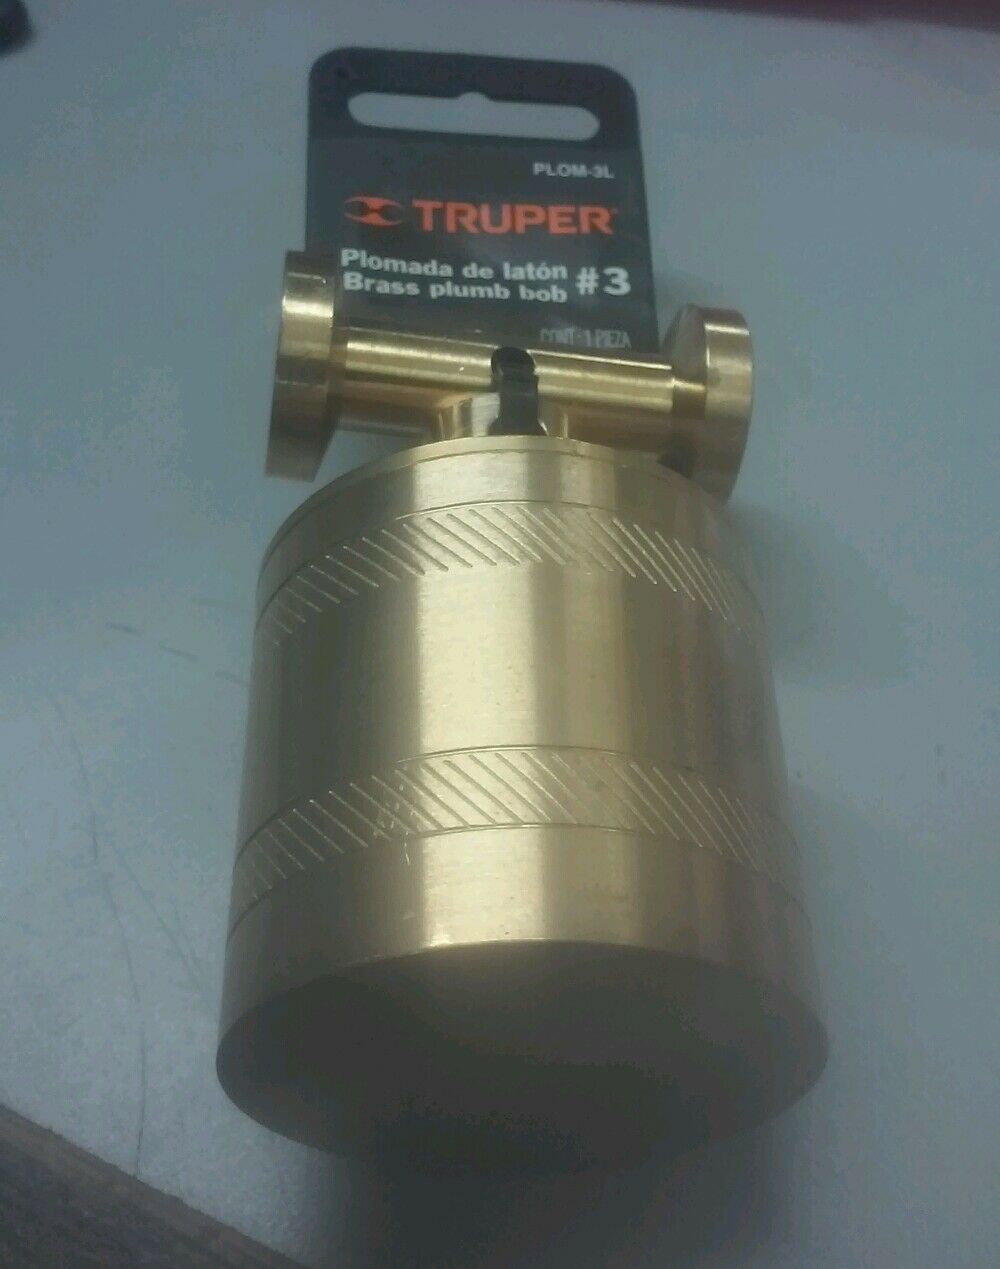 Truper Plom-3l Brass Plumb Bob #3